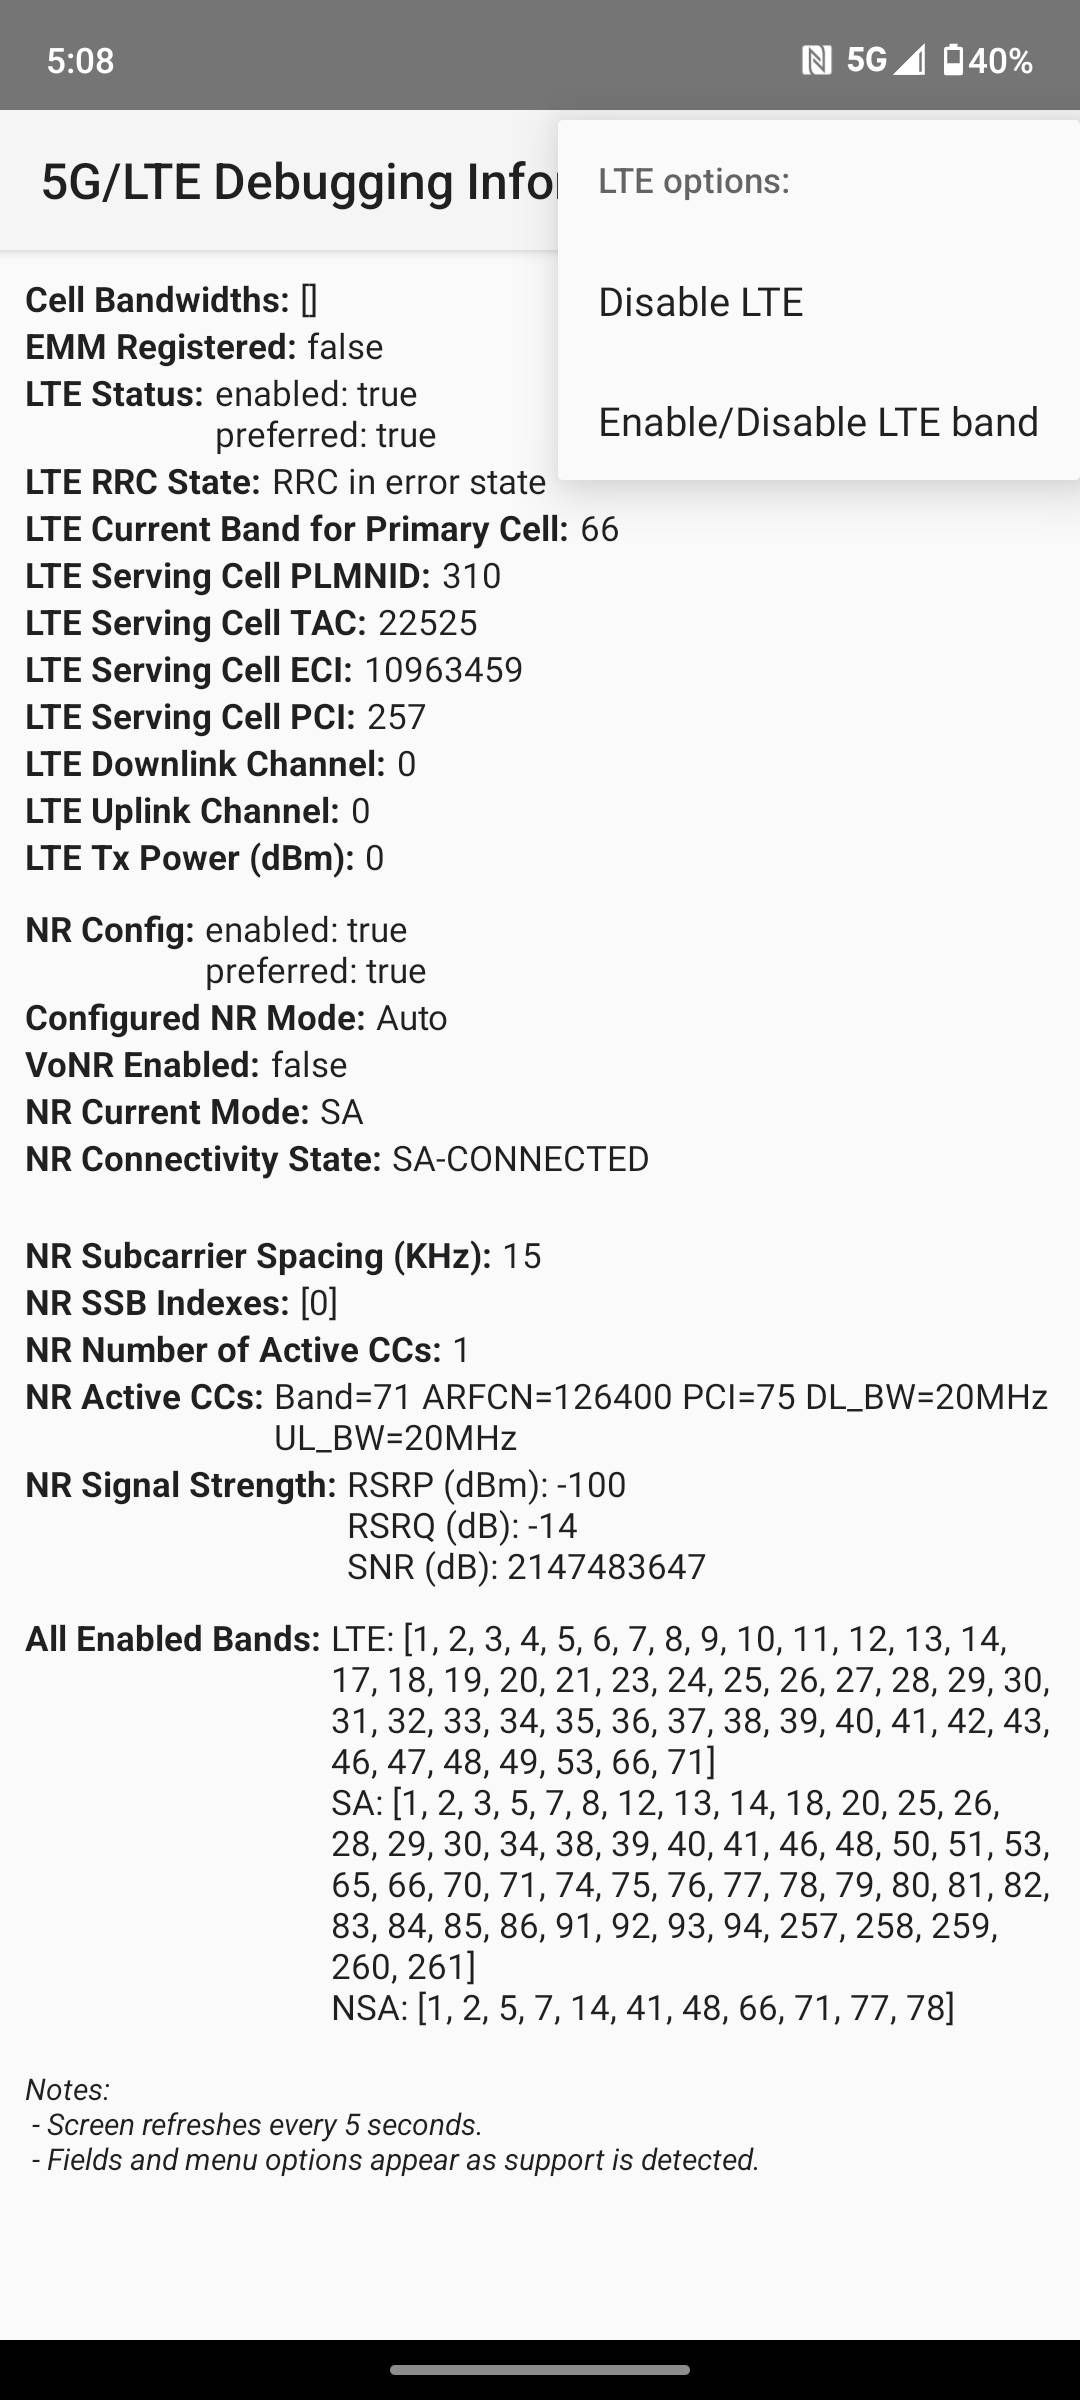 Menu de depuração da Motorola com opções para desabilitar LTE.